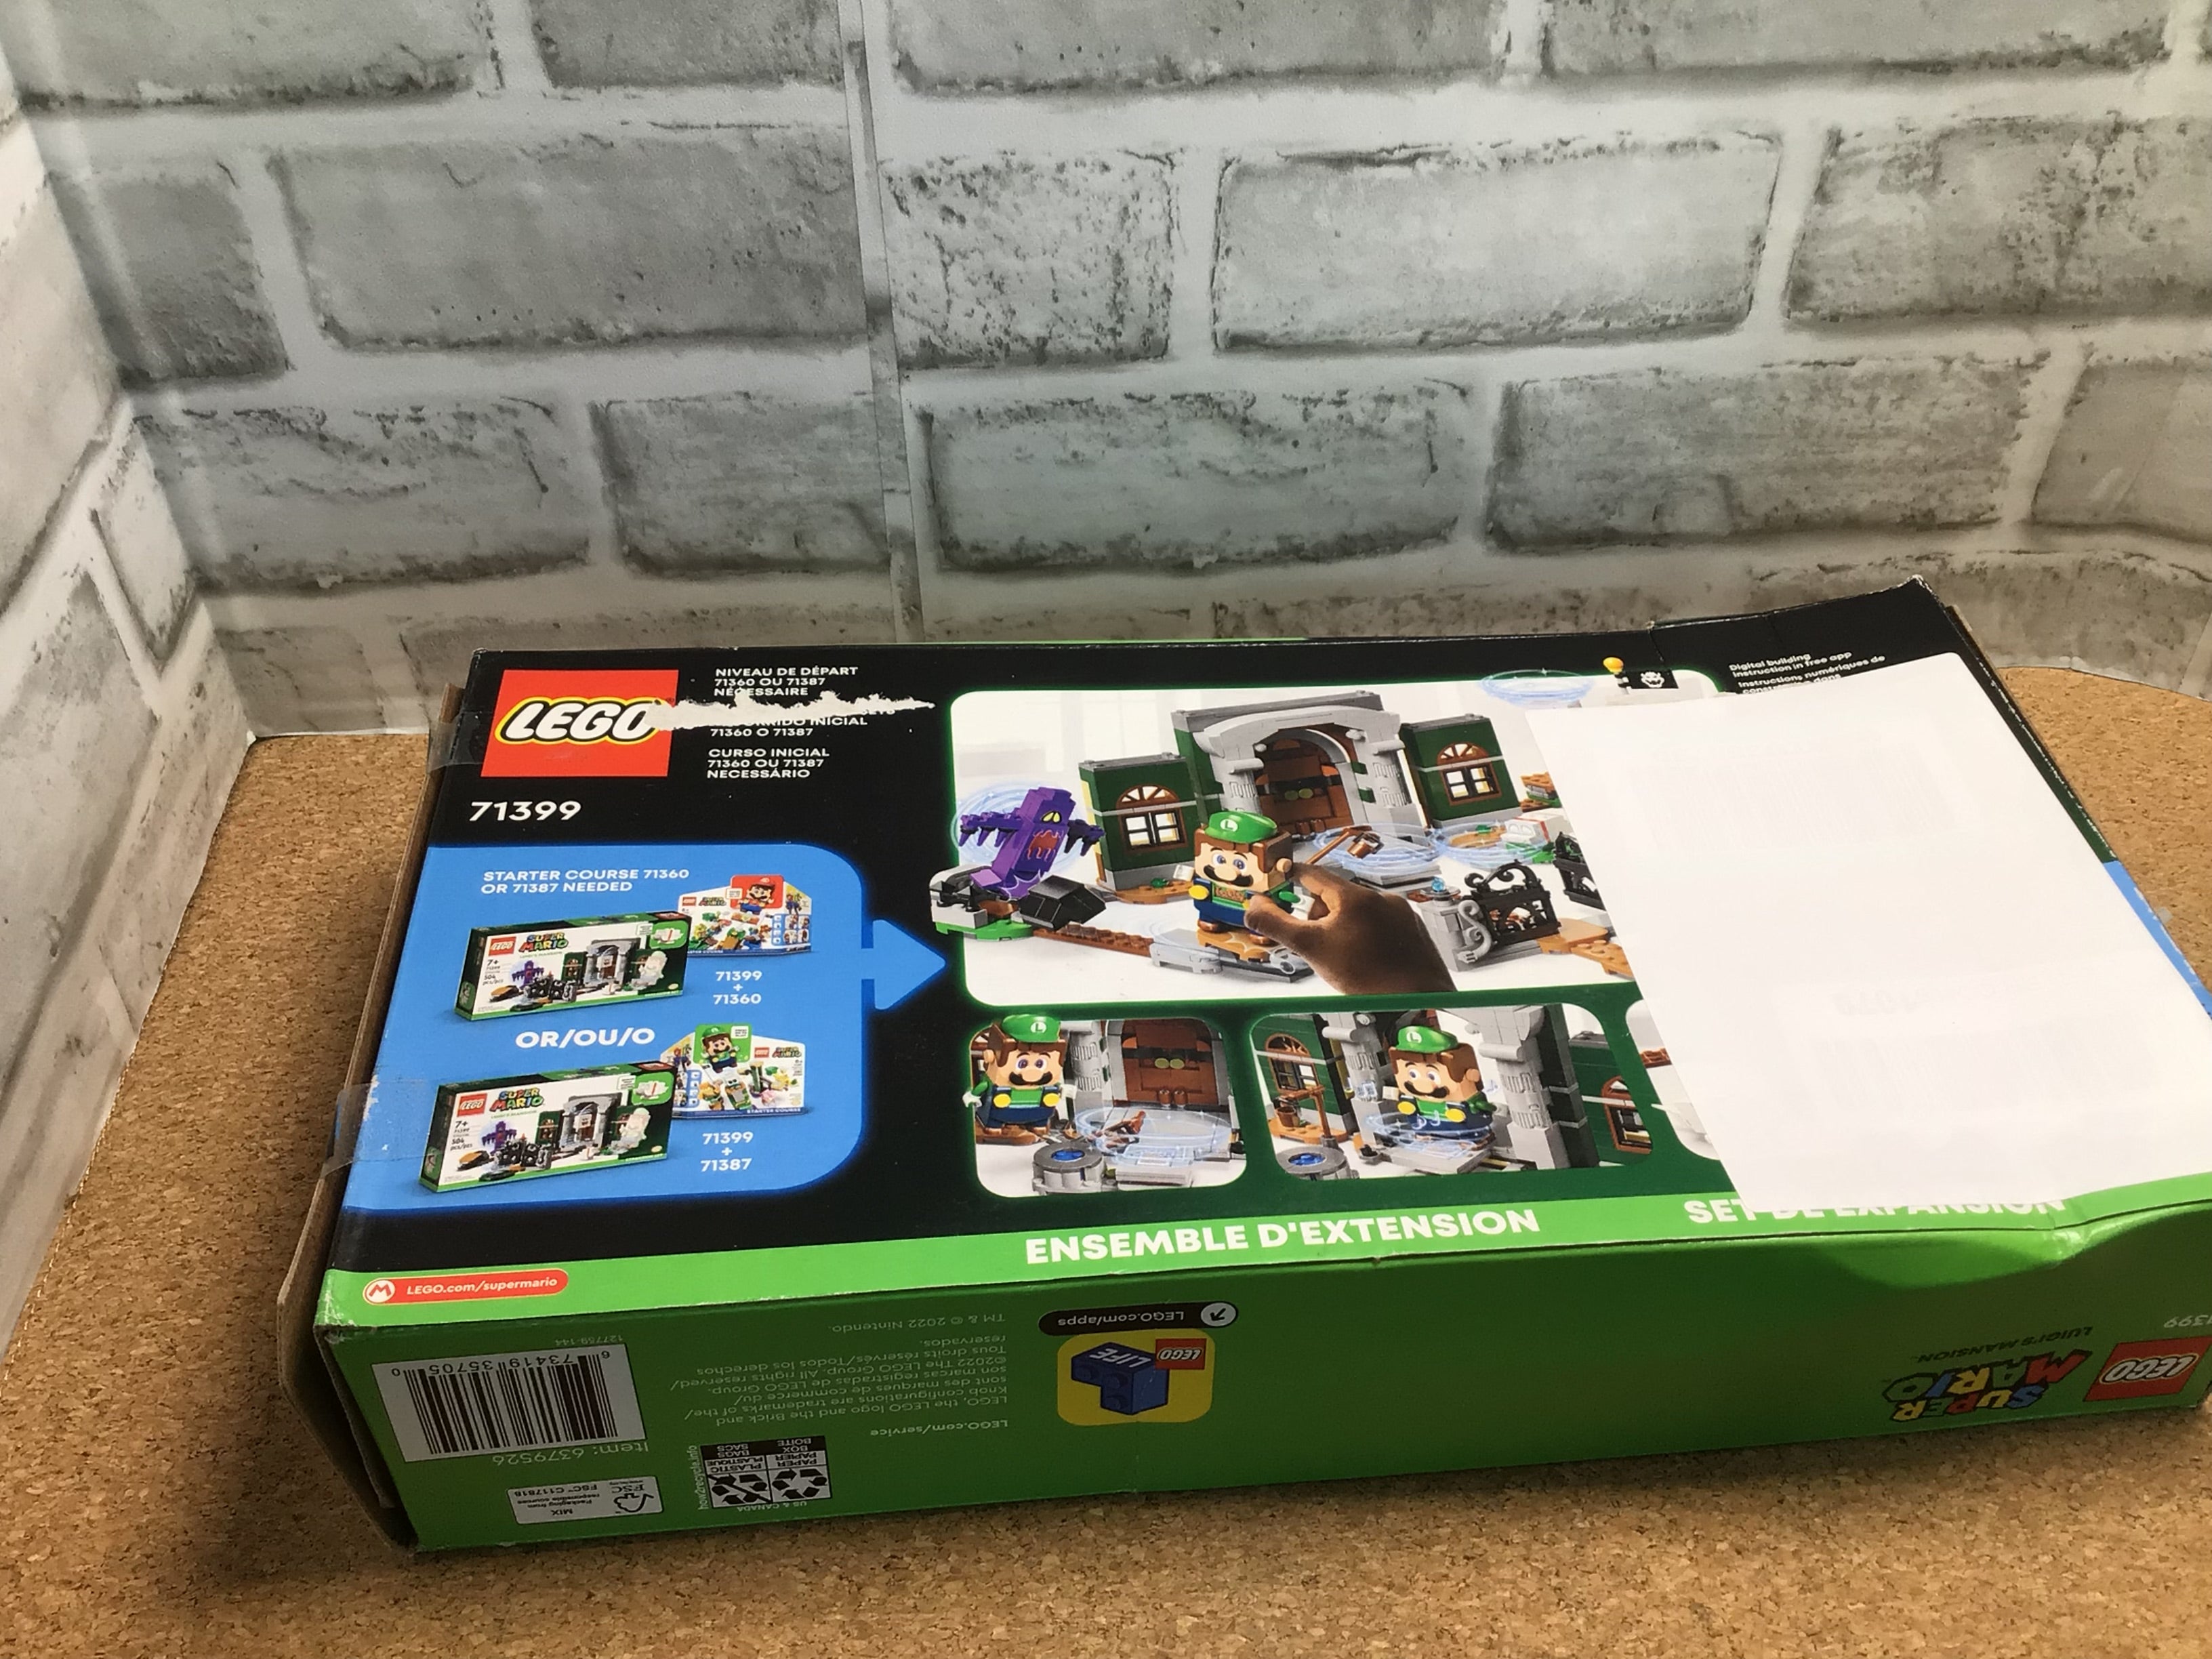 LEGO Super Mario Luigi’s Mansion & Super Mario Boss Sumo Bro Topple Tower -2 Set (7921476731118)